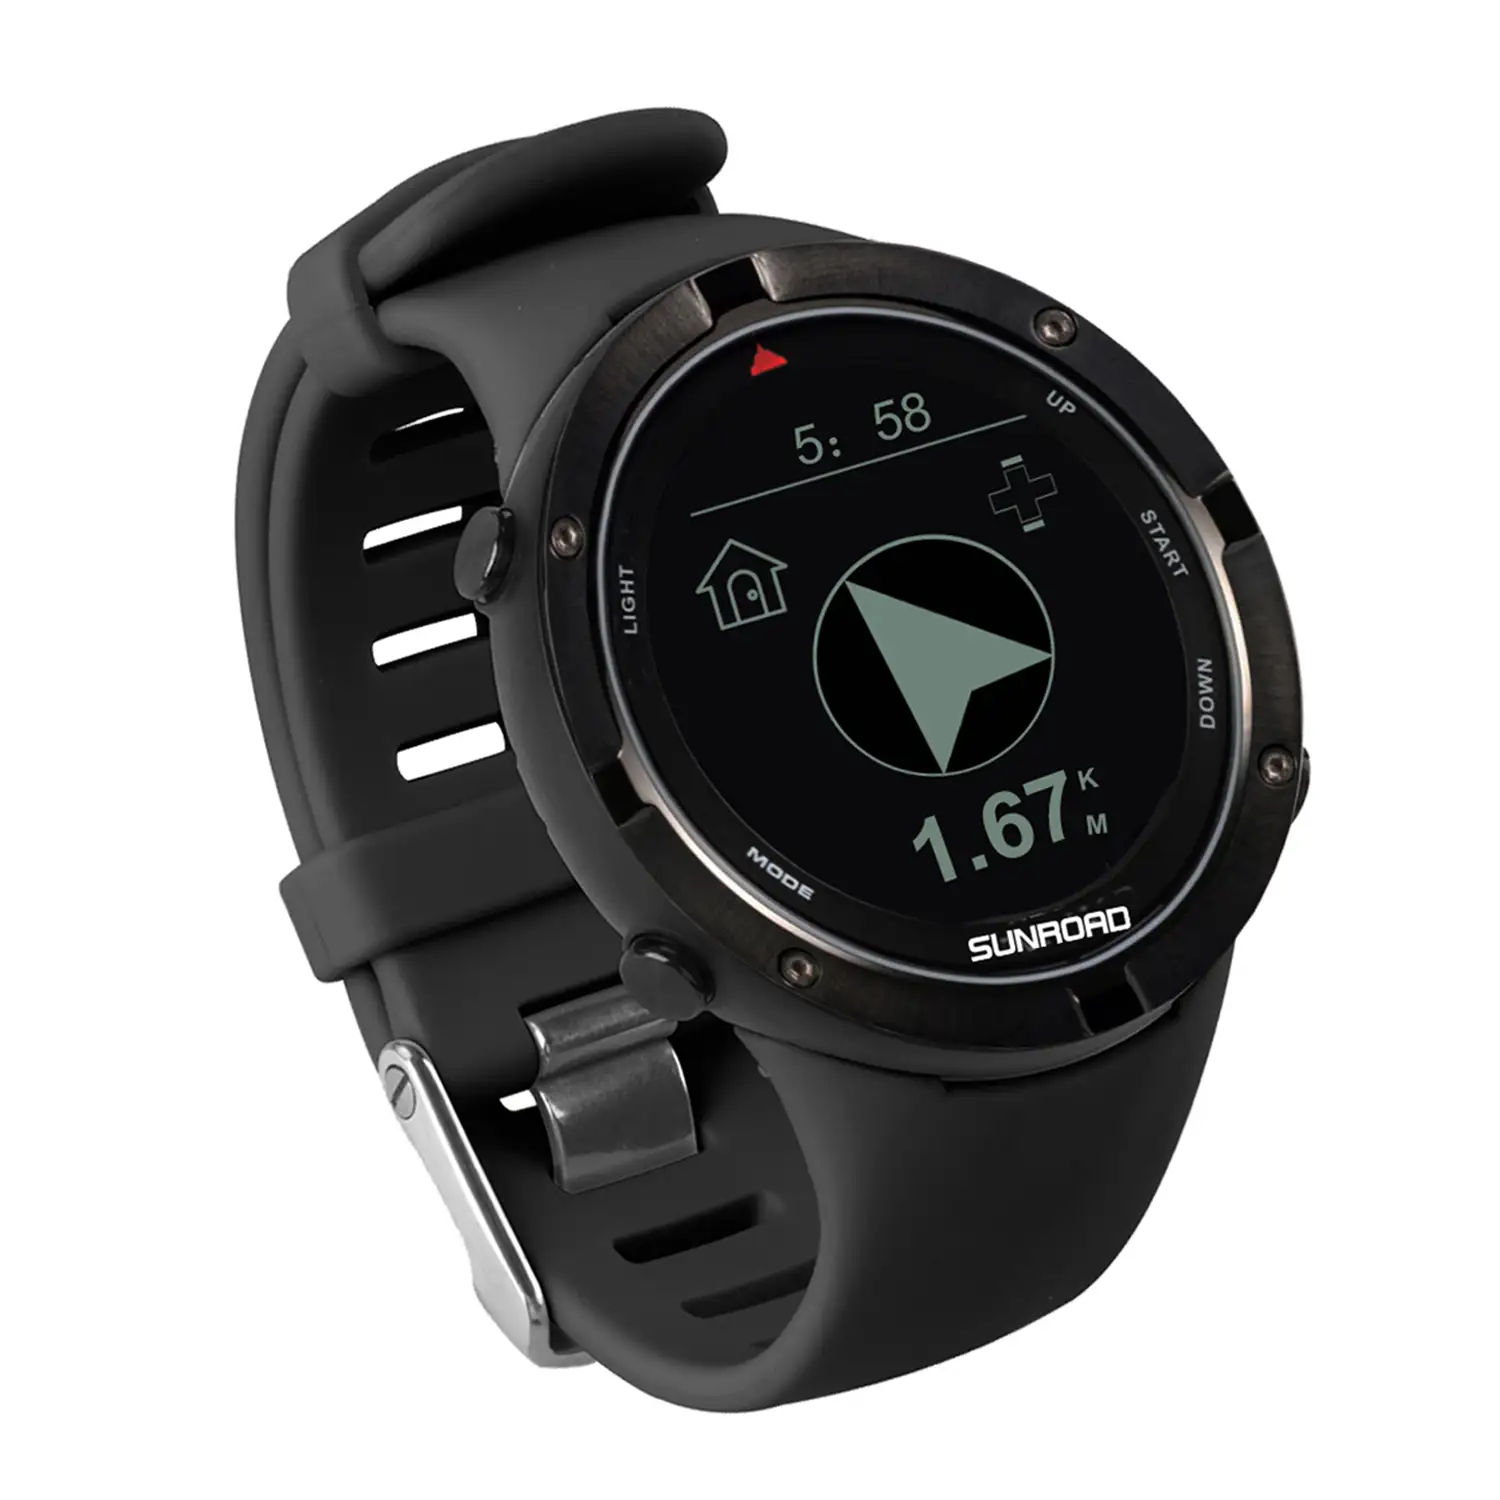 Smartwatch FR934 con localización GPS, sumergible 5 atm. Varios modos deportivos, incluye triatlón. Altímetro, barómetro, brújula, previsión meteorológica.